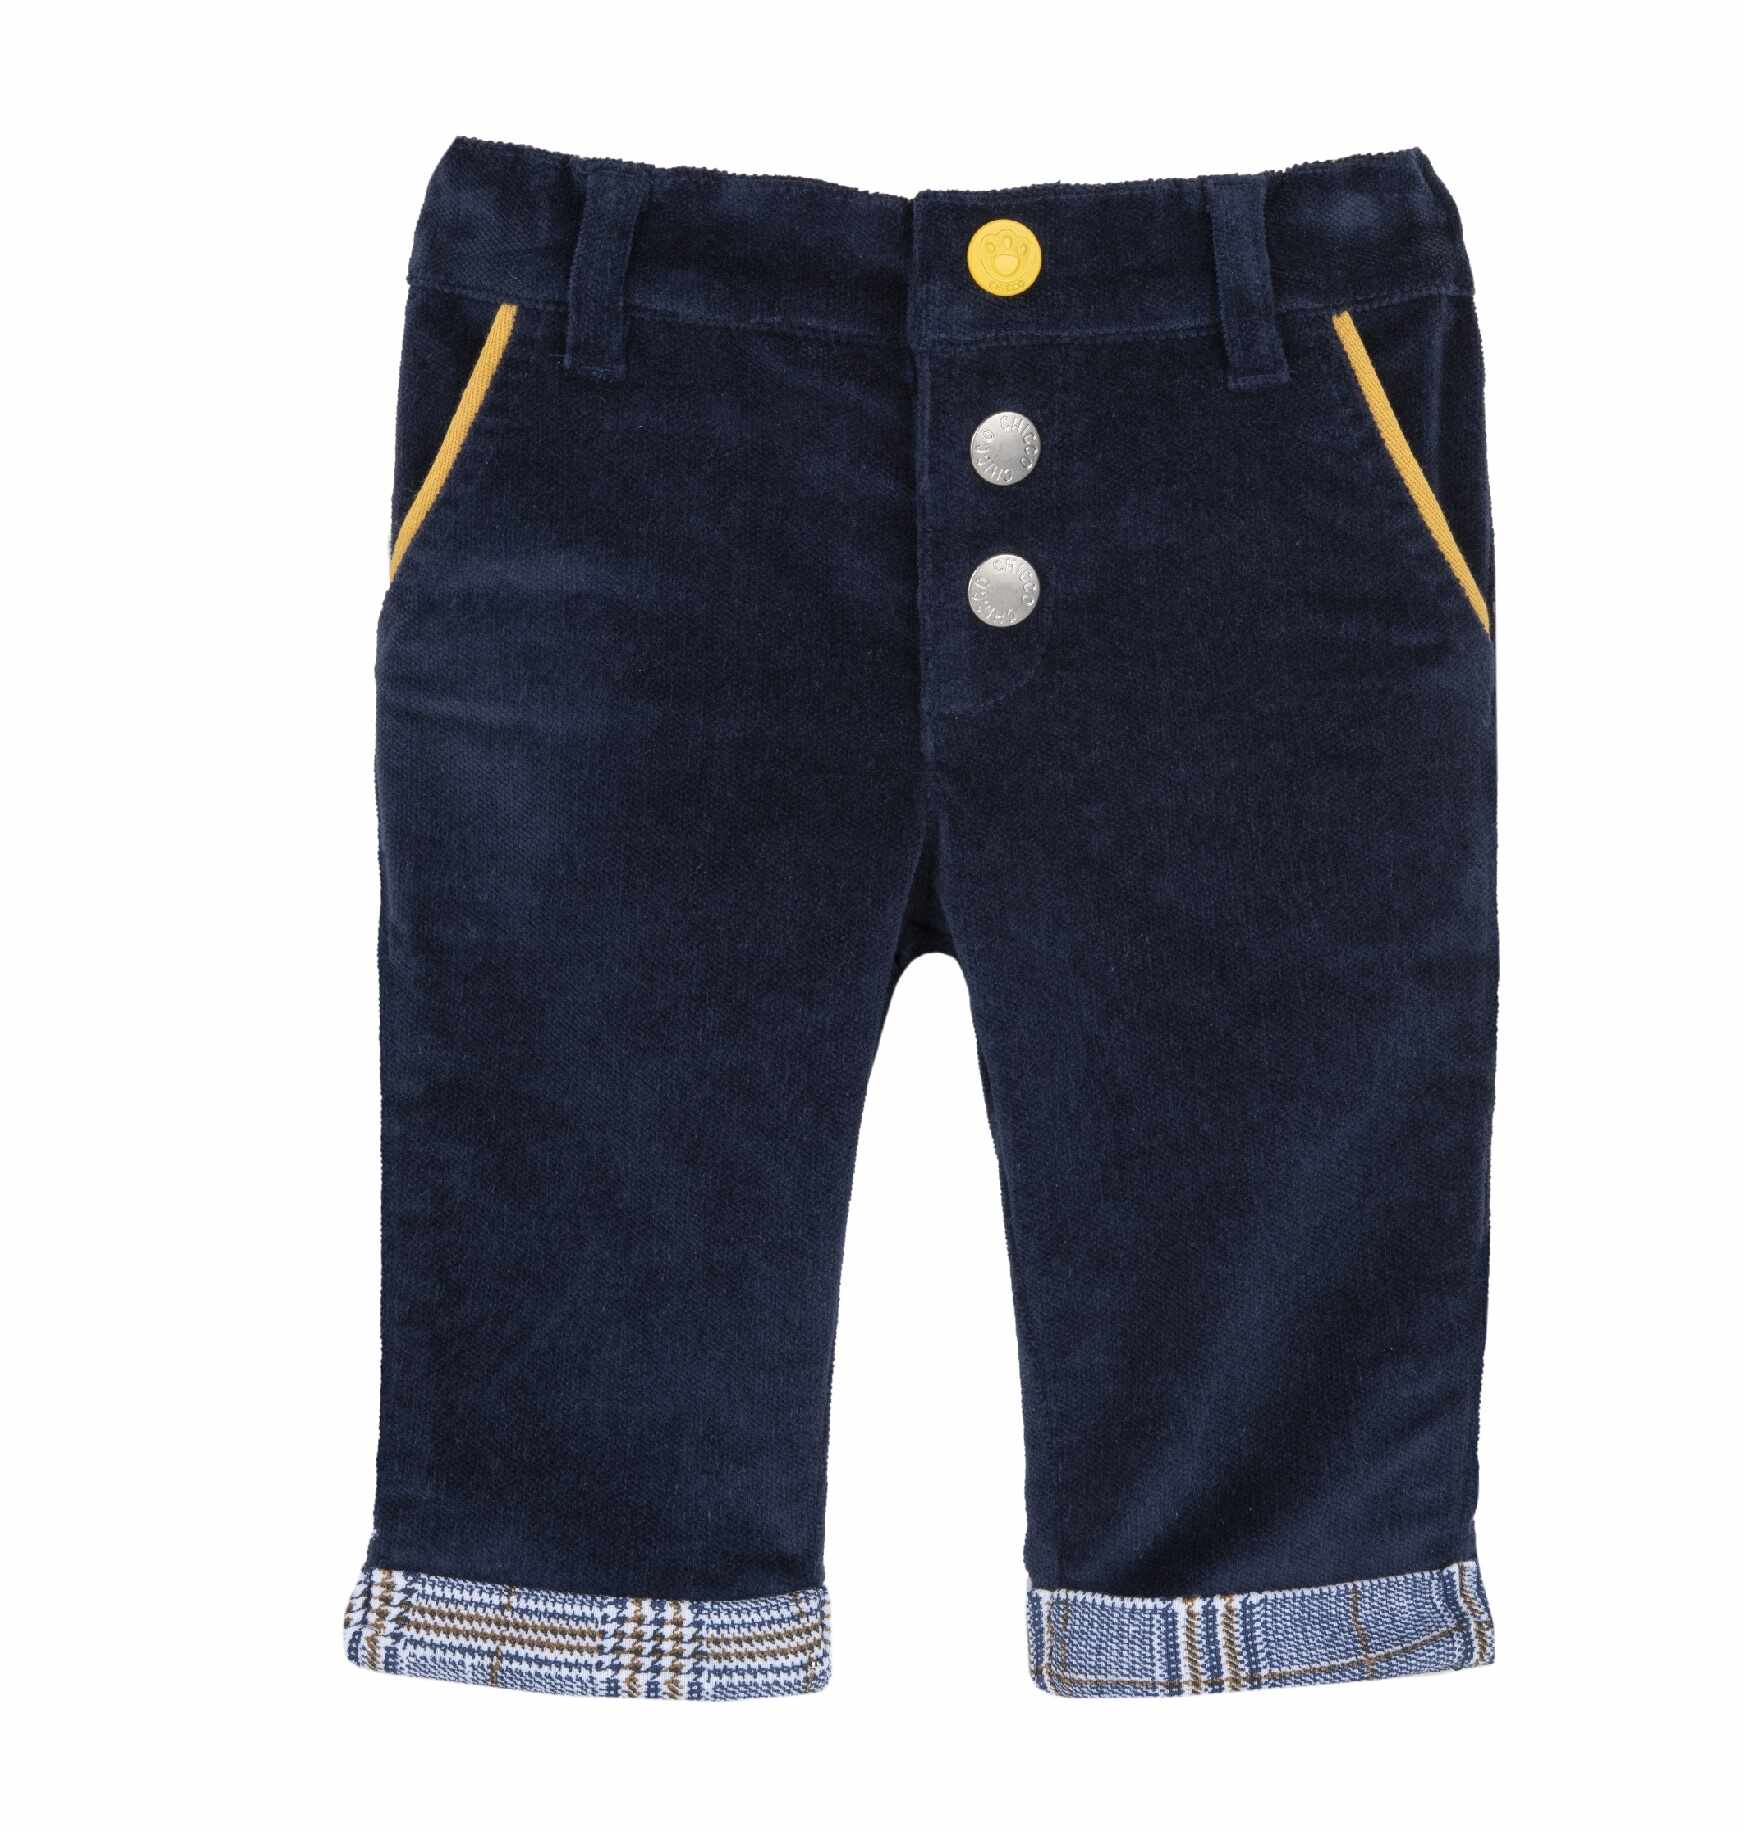 Pantaloni copii Chicco, albastru inchis, 08669-63MFCO